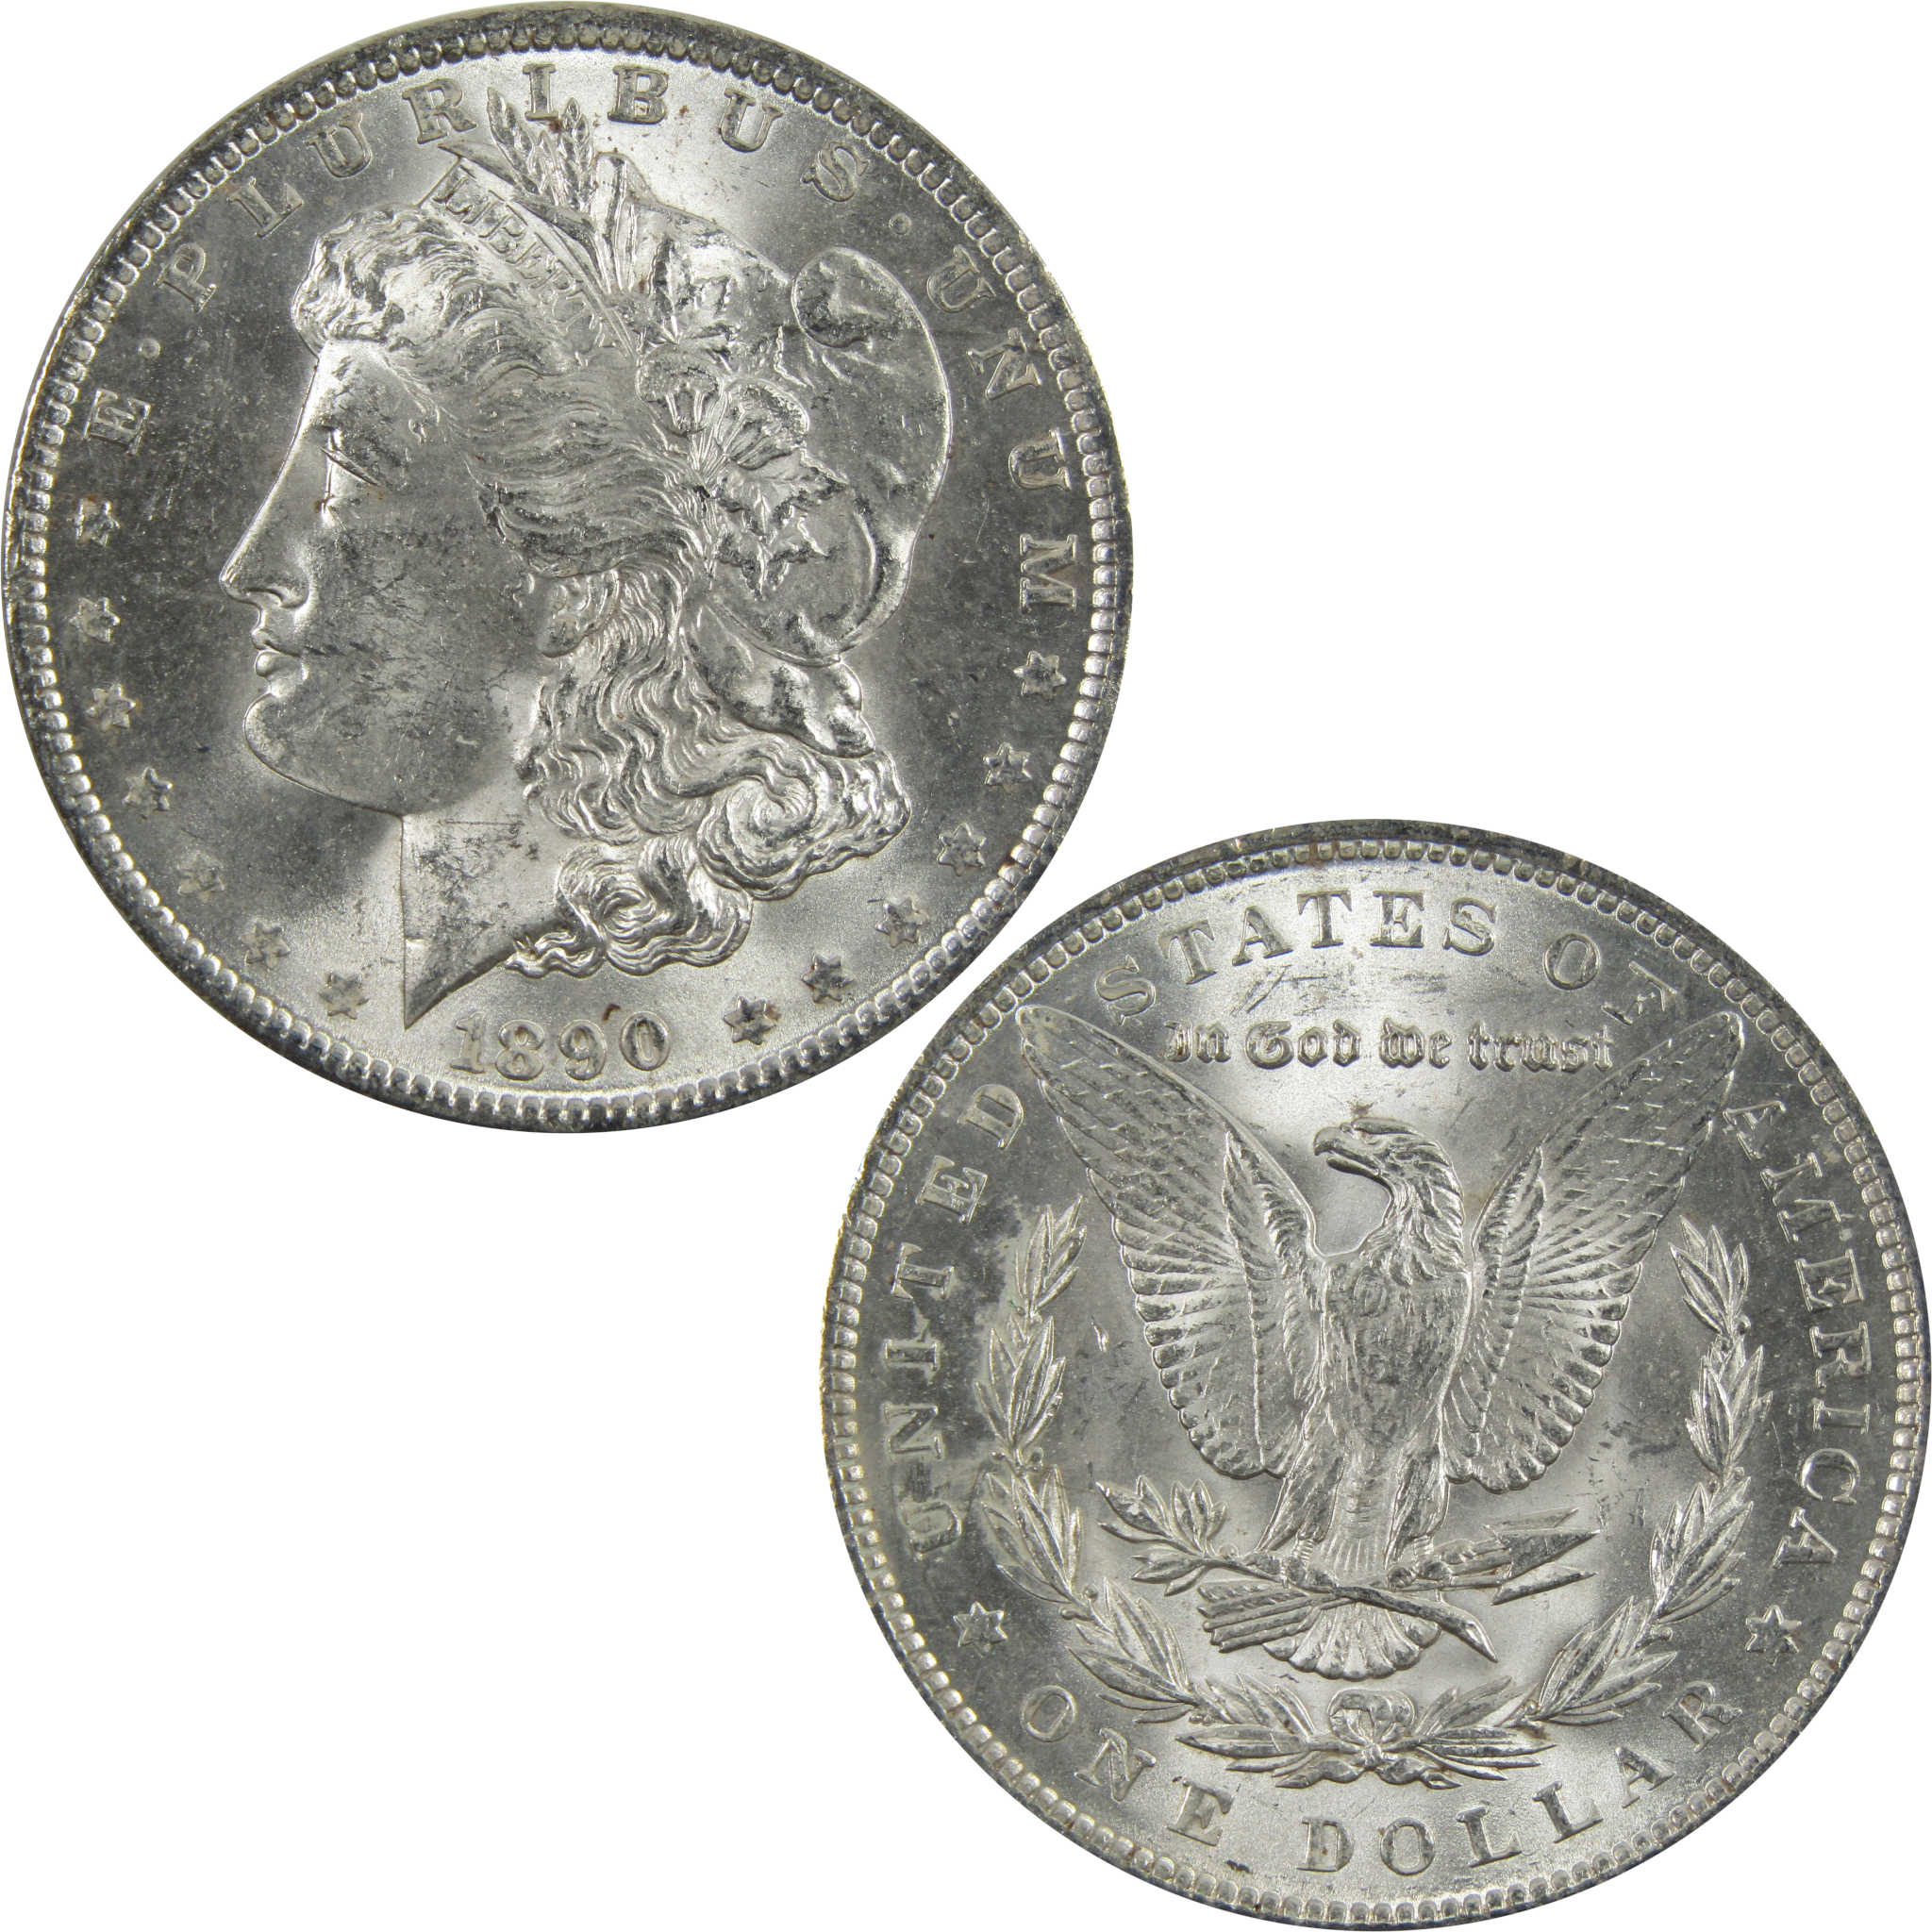 1890 Morgan Dollar BU Uncirculated 90% Silver $1 Coin SKU:I5136 - Morgan coin - Morgan silver dollar - Morgan silver dollar for sale - Profile Coins &amp; Collectibles